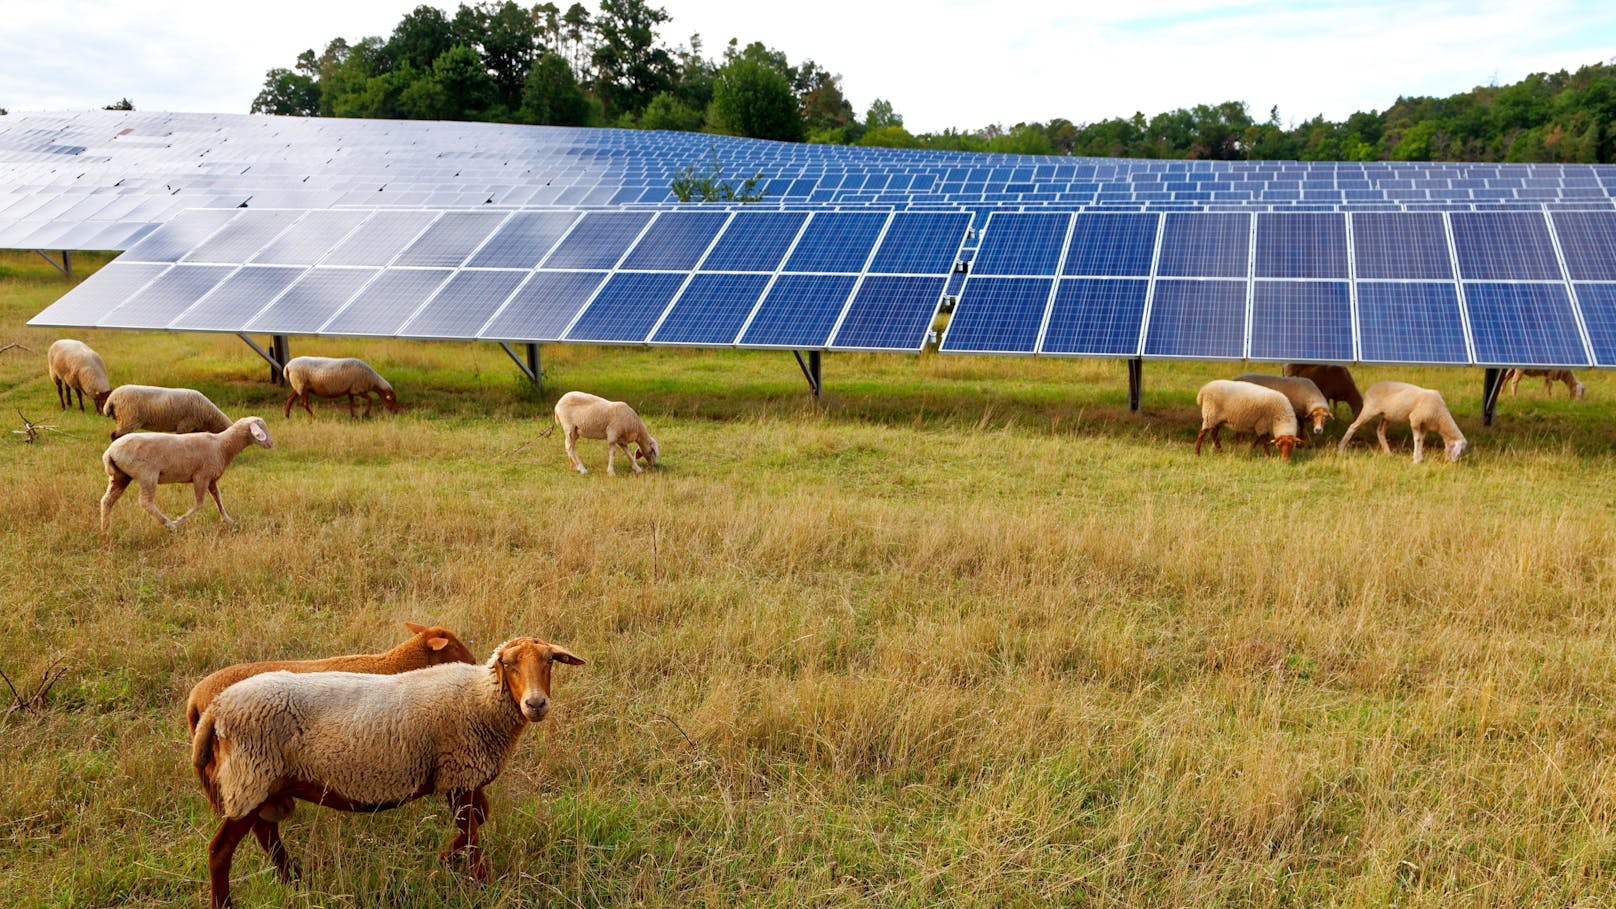 Ärger über Photovoltaik-Anlage in Naturschutzgebiet